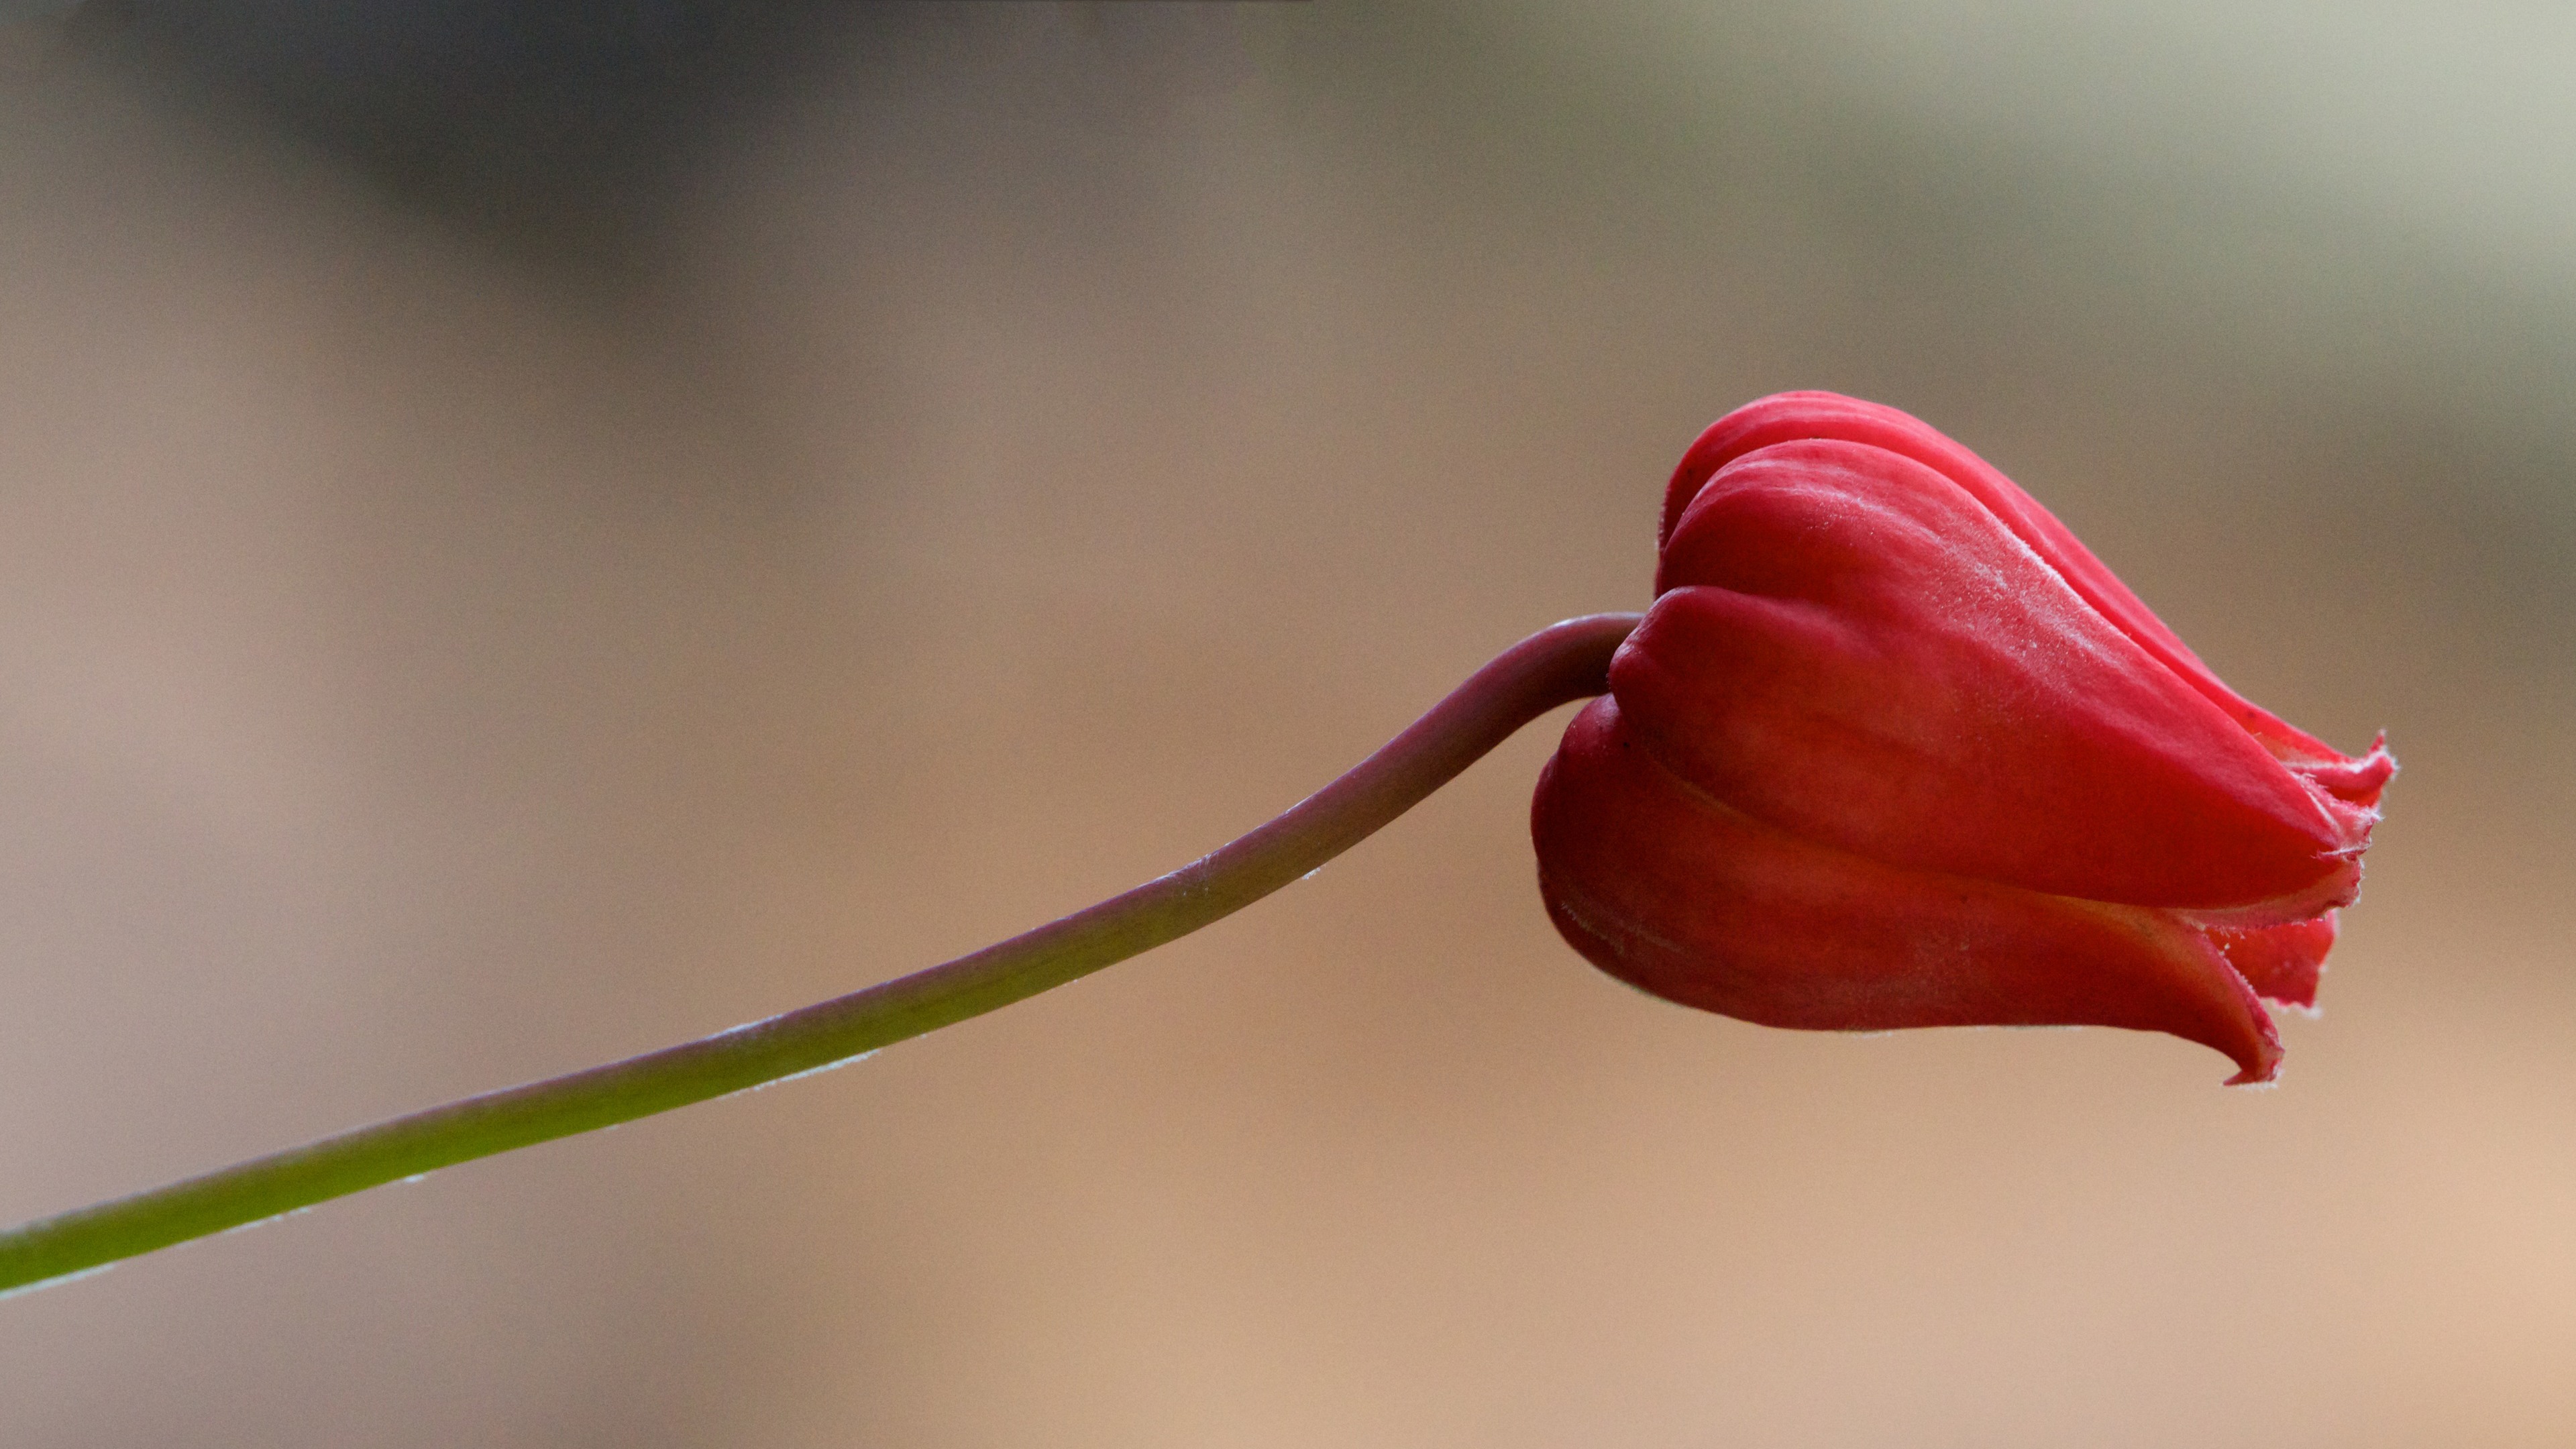 پرتره ای از گل سرخ لاله با ساقه ی خمیده و قهوه ای رنگ